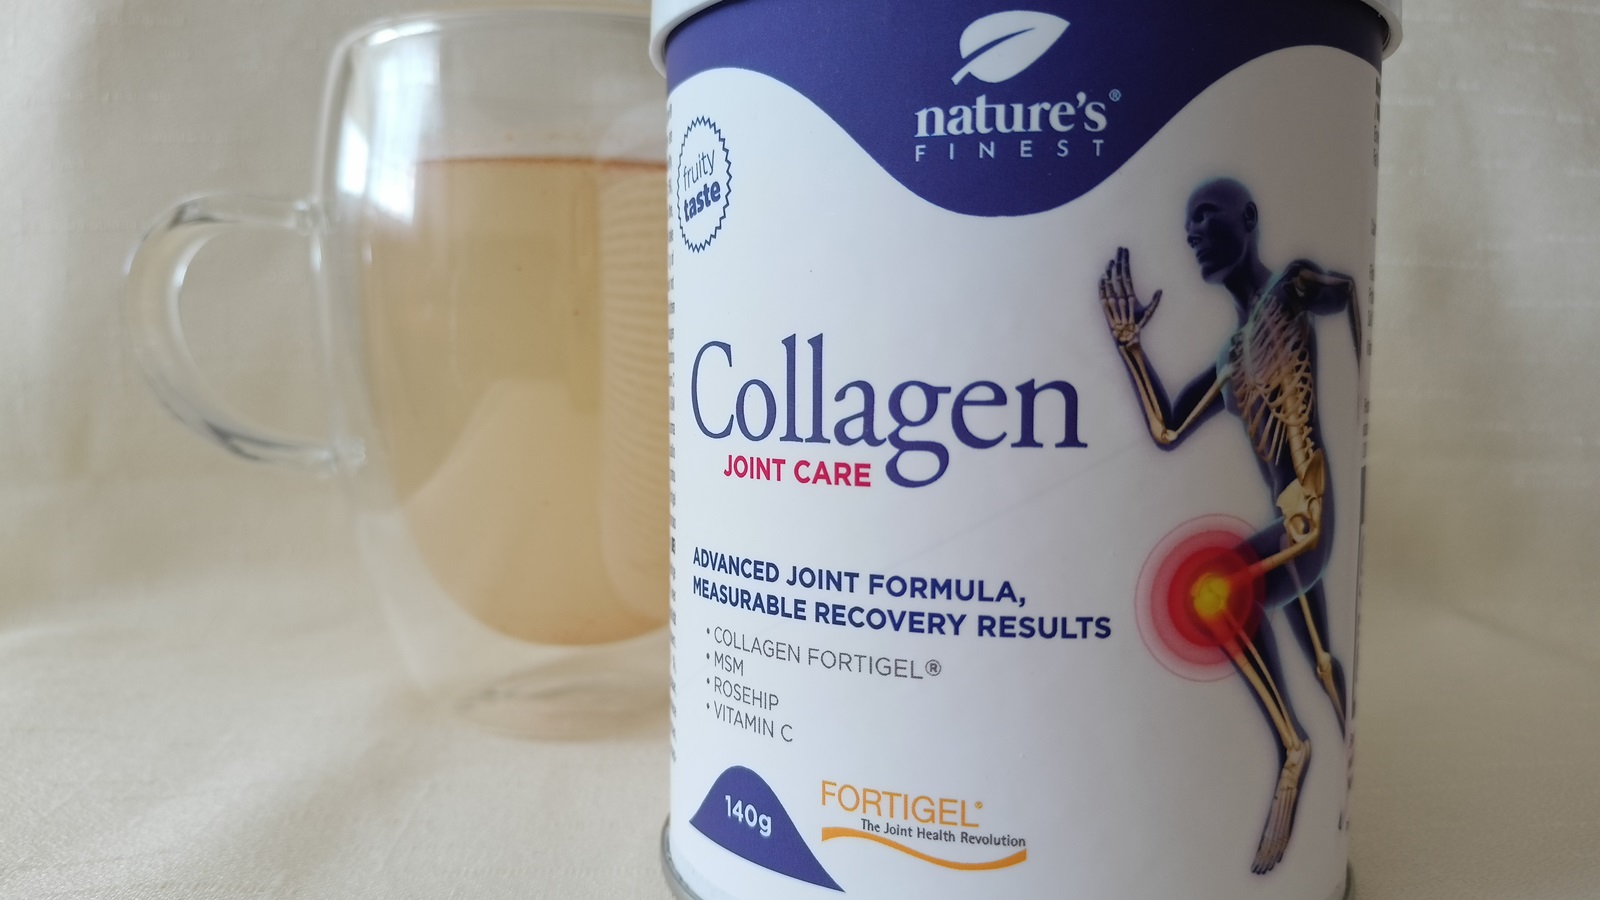 Bewertung: Wir haben Collagen Joint Care von Nature’s Finest ausprobiert